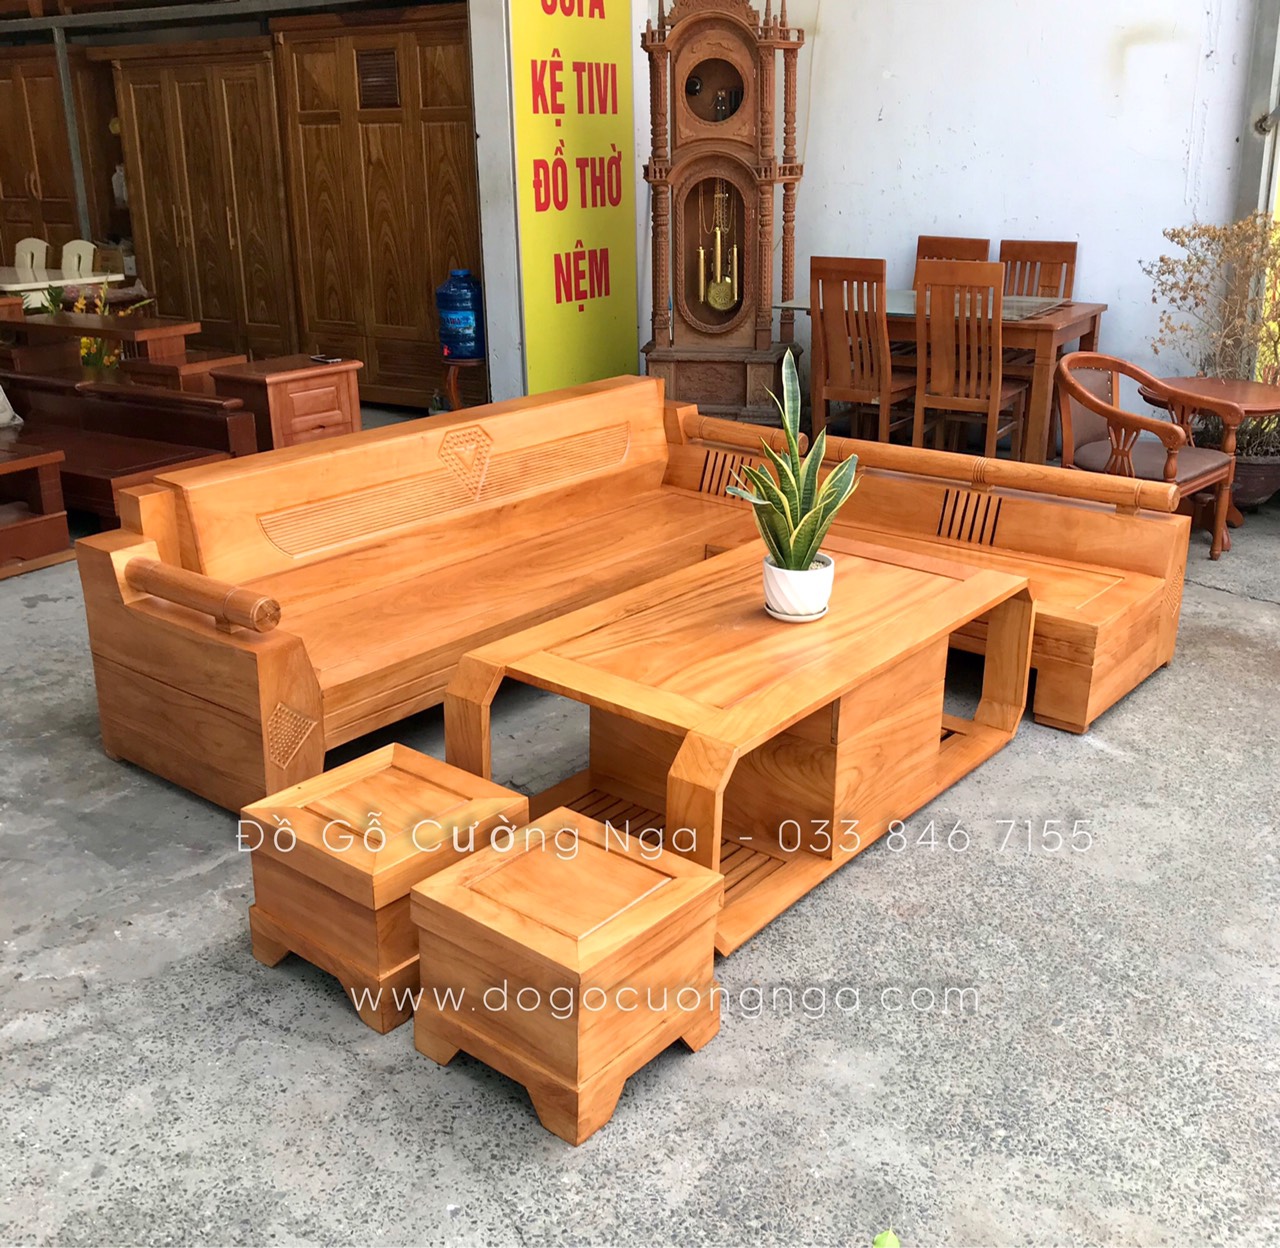 Mẫu ghế sofa văng bằng gỗ tự nhiên GB-813 – NỘI THẤT GIA BẢO